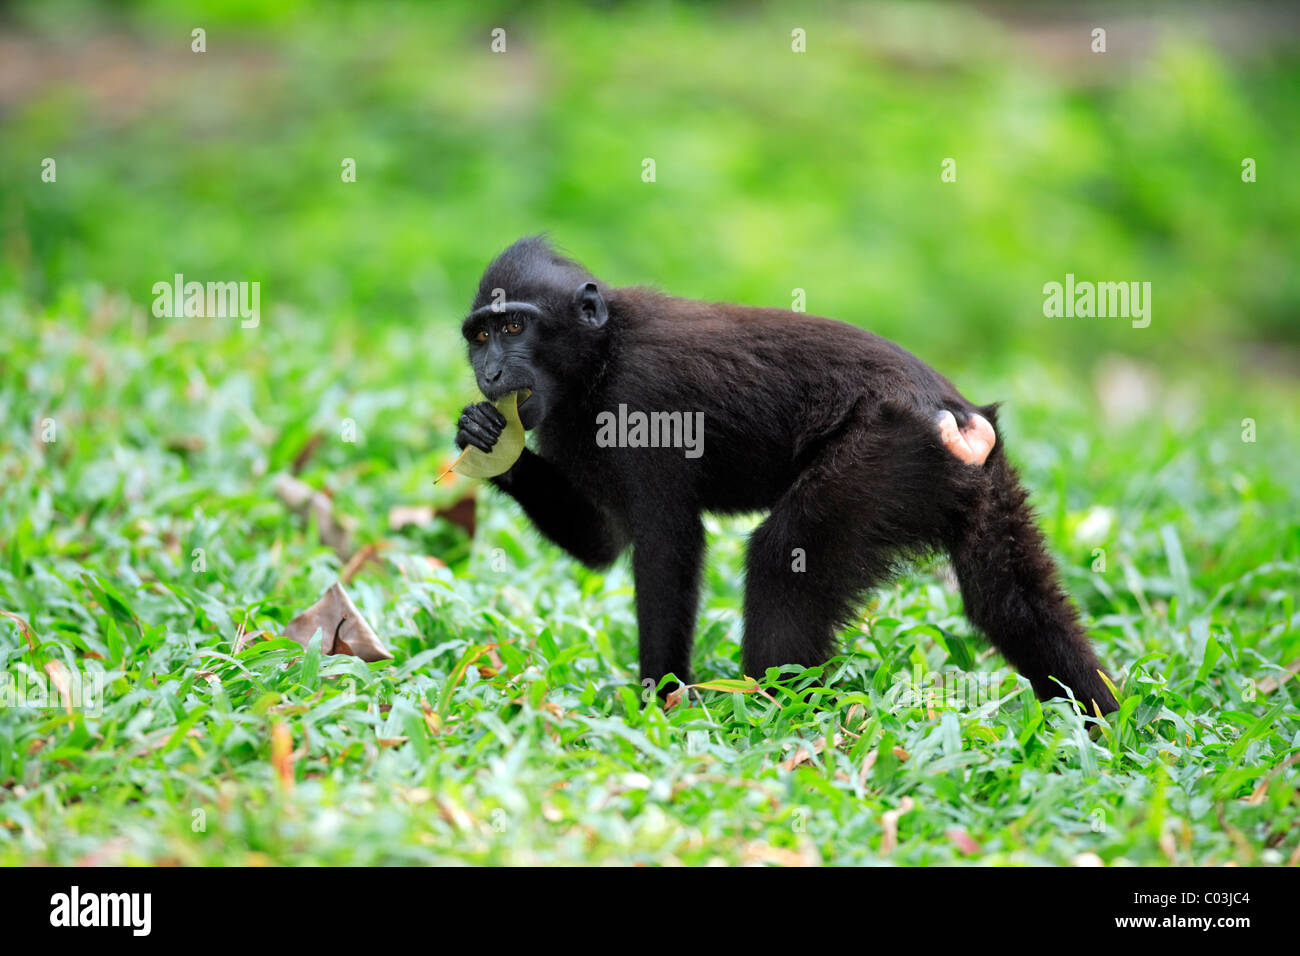 Les Célèbes Crested Macaque (Macaca nigra), la manger, Sulawesi, Océan Pacifique Banque D'Images